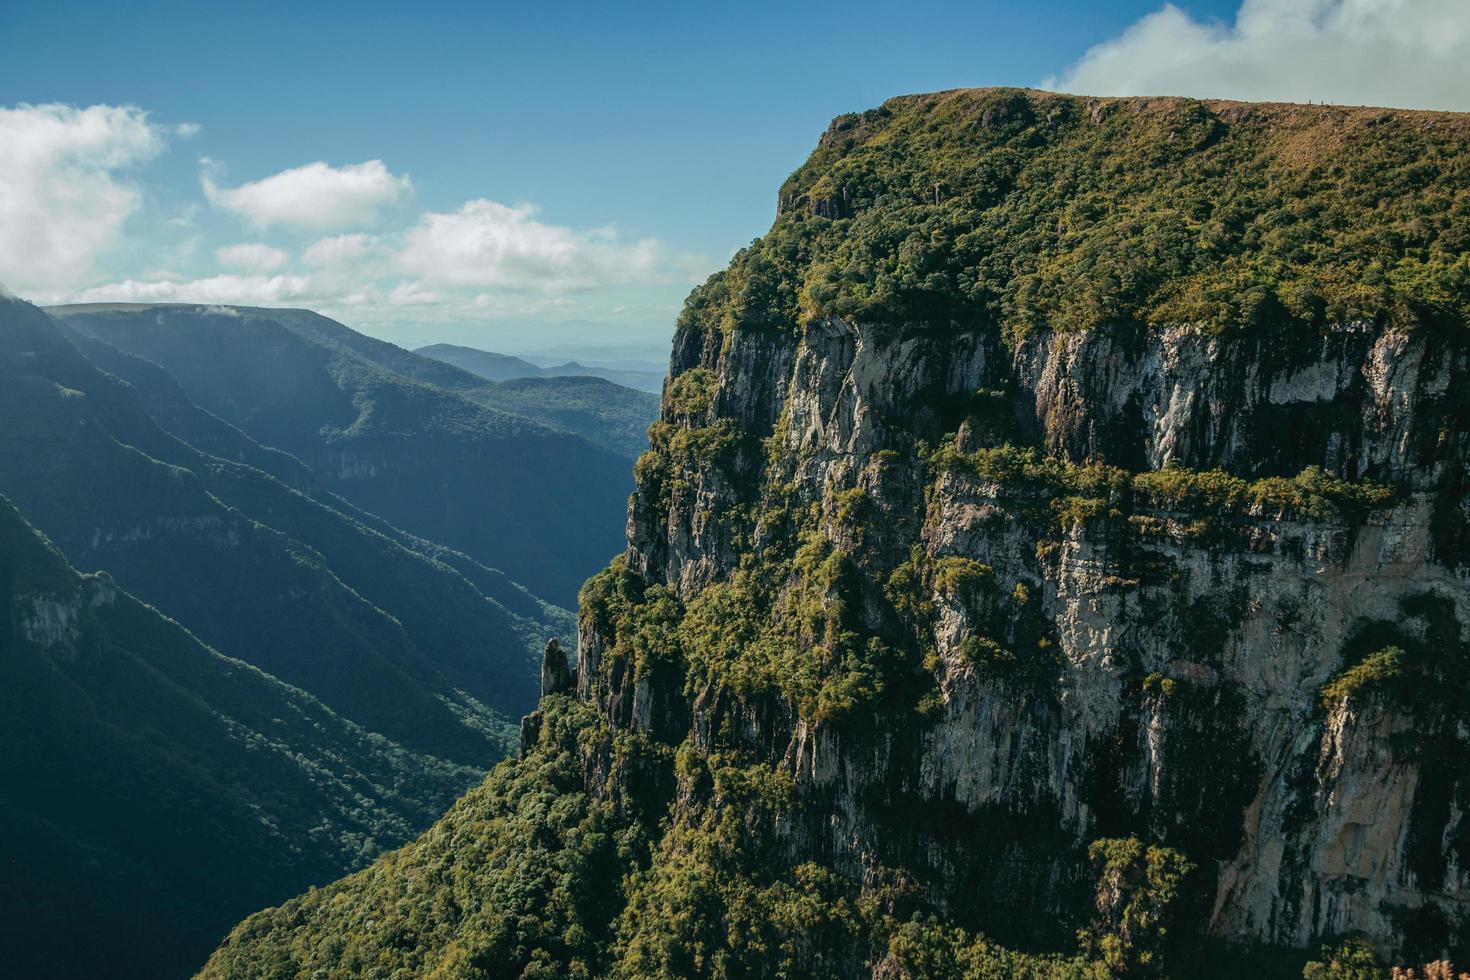 Fortaleza cañón con escarpados acantilados rocosos cubiertos por un espeso bosque en un día soleado cerca de cambara do sul. una pequeña ciudad rural en el sur de Brasil con increíbles atractivos turísticos naturales. foto